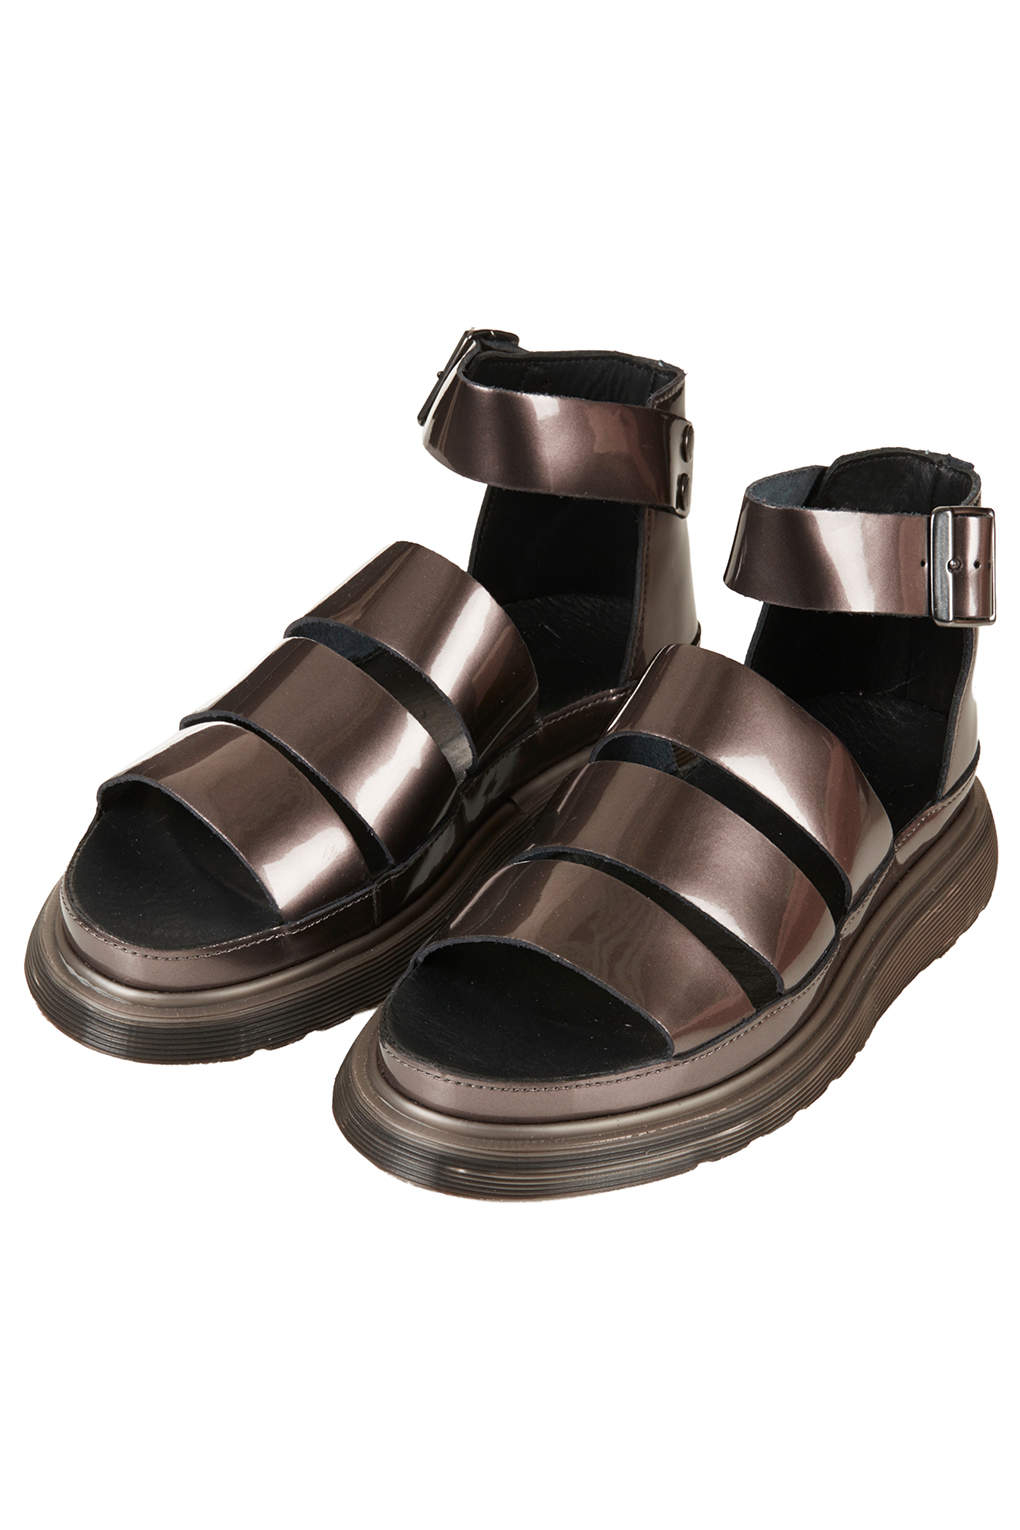 TOPSHOP Dr Marten Clarissa Sandals in Pewter (Metallic) - Lyst